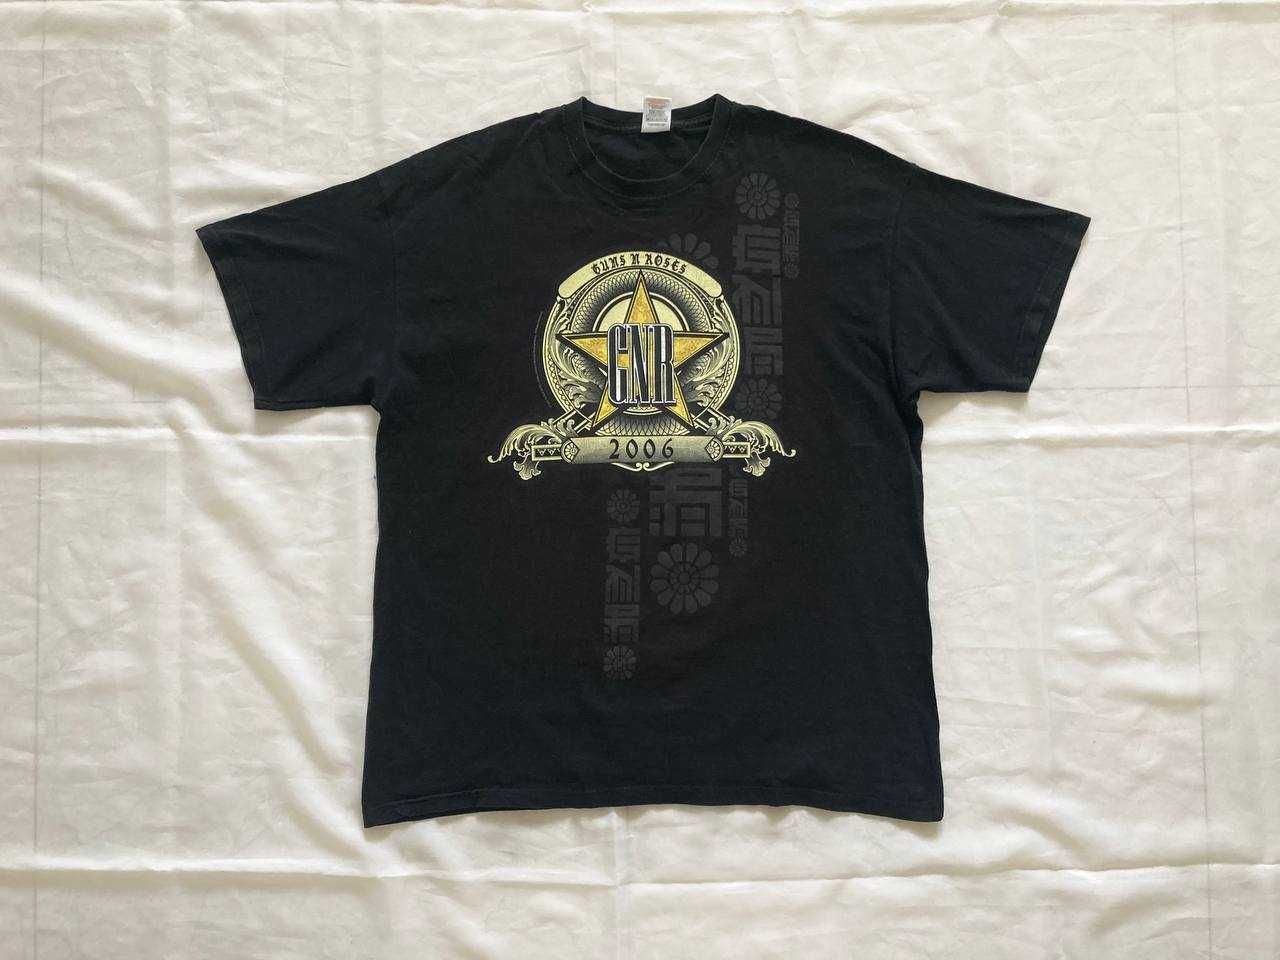 Винтажная футболка / мерч Guns N’ Roses